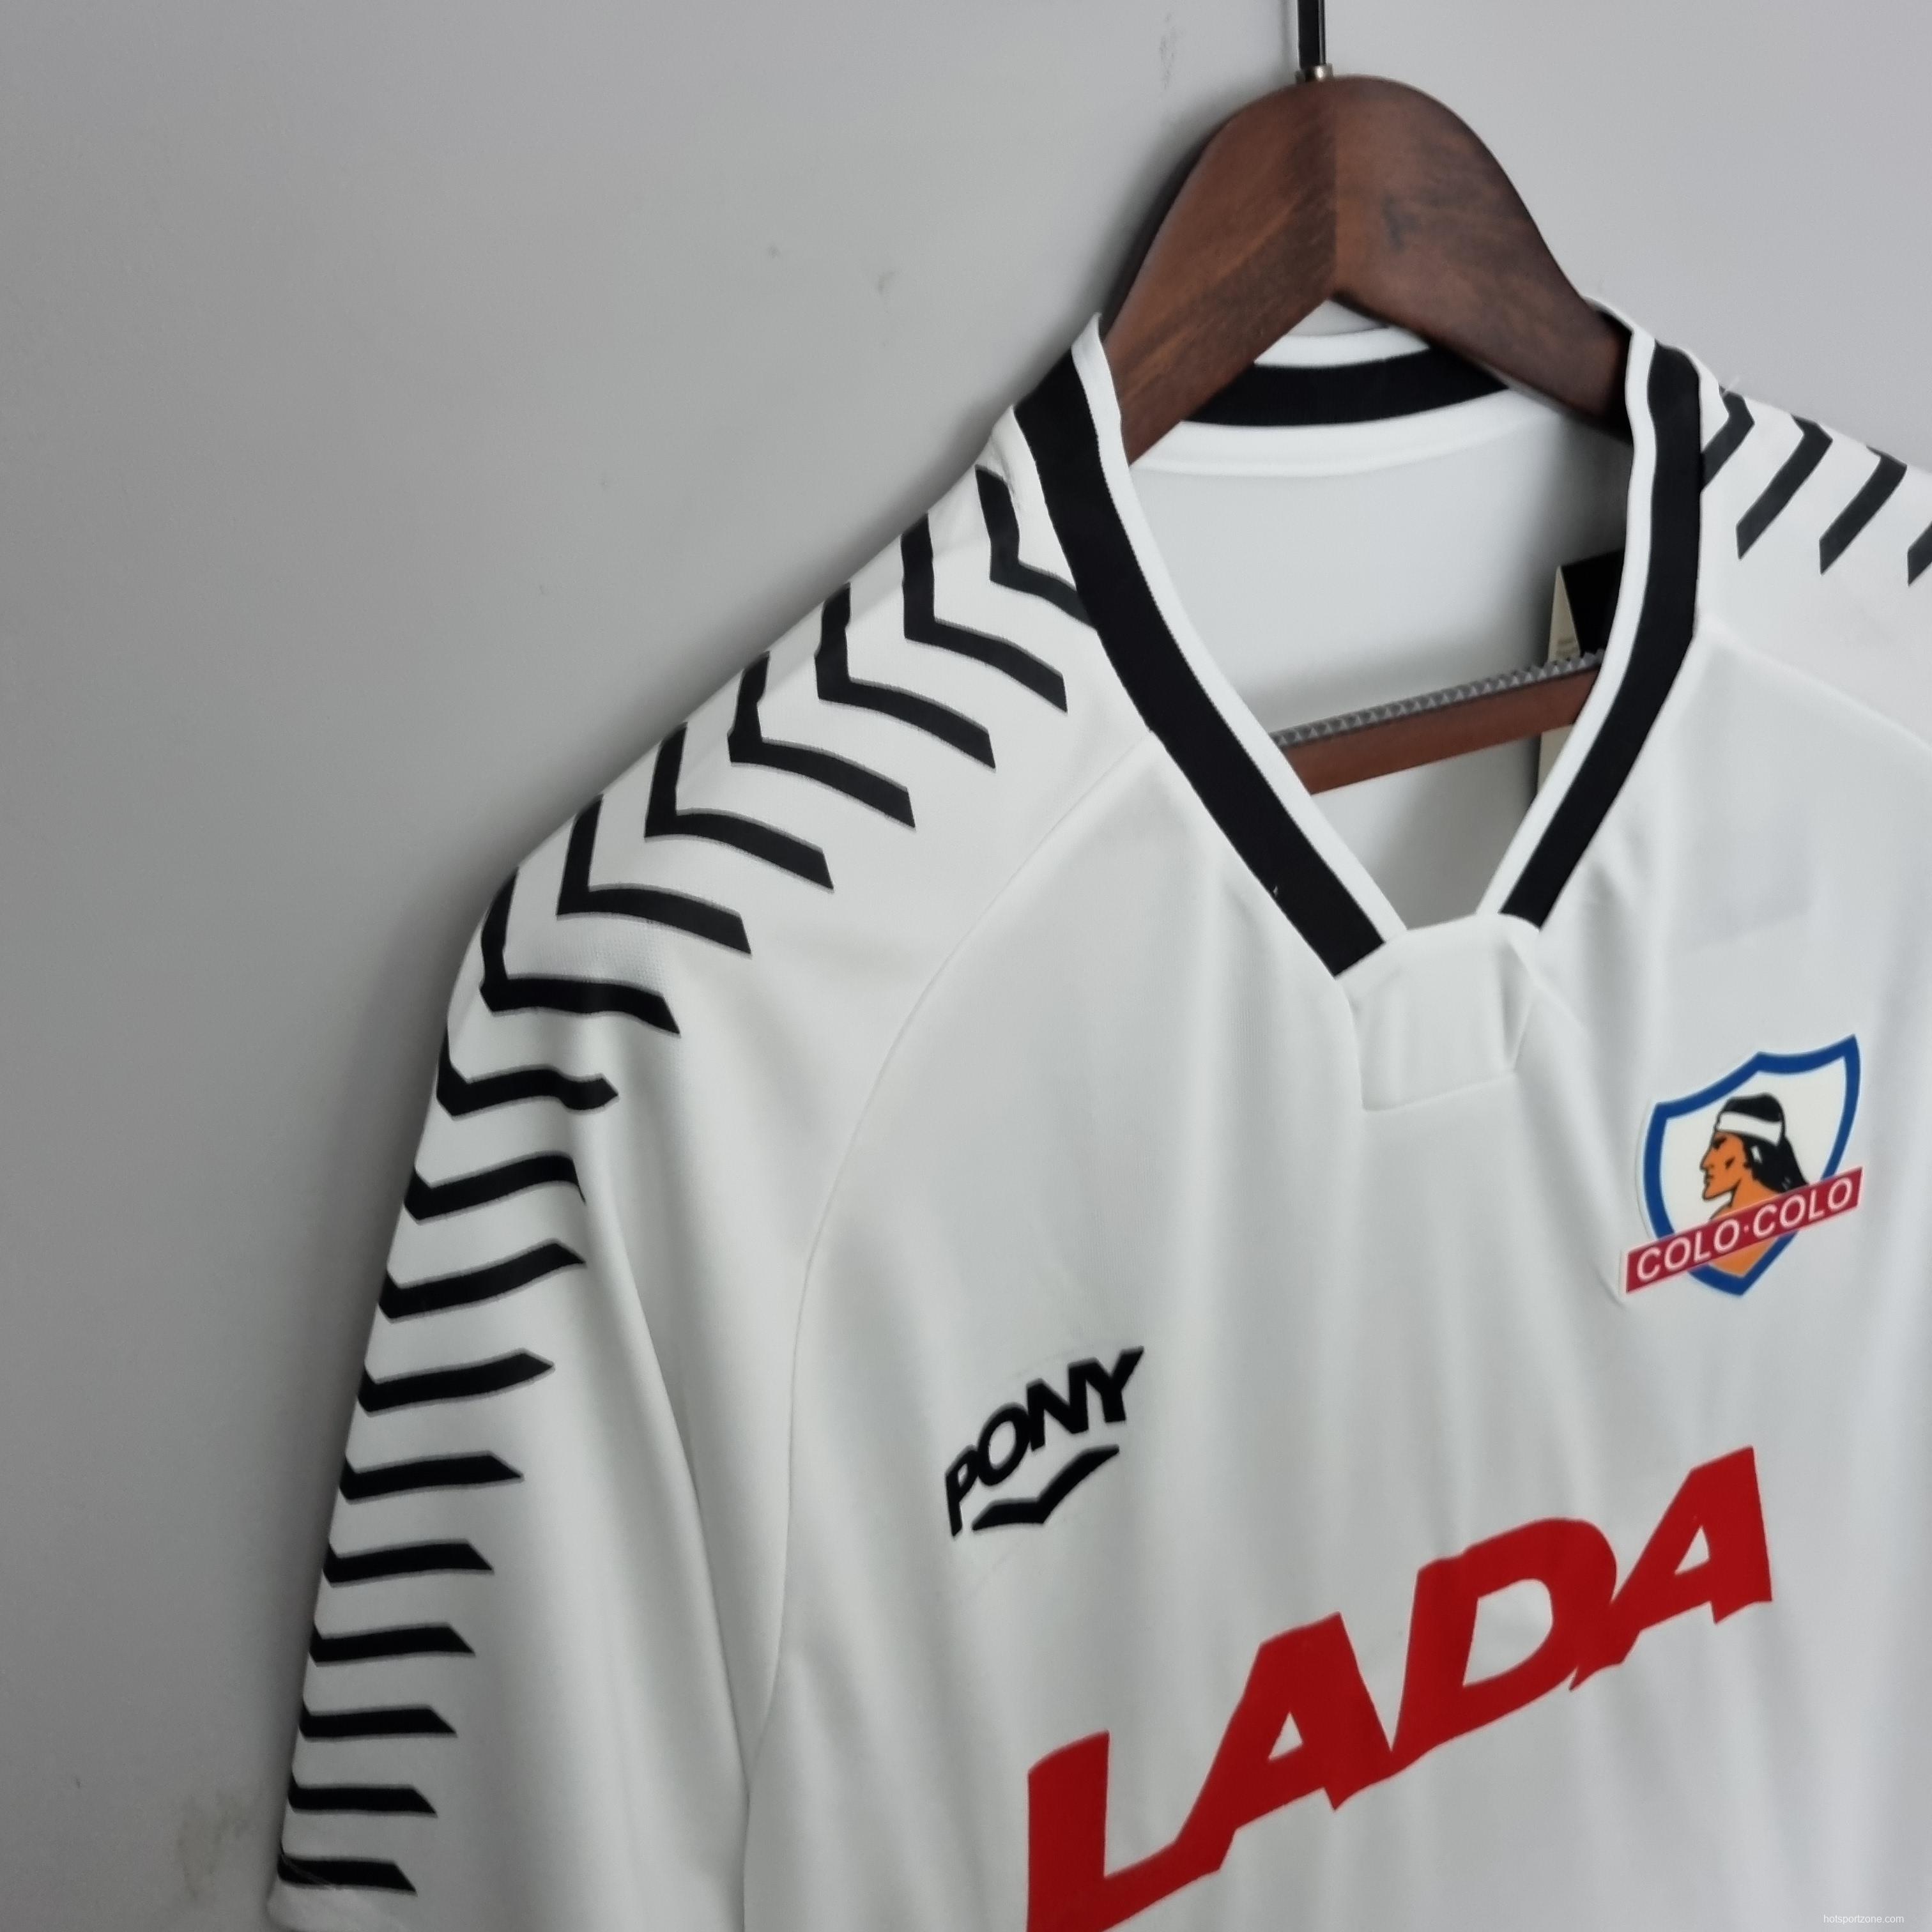 Retro 1992 Colo Colo home Soccer Jersey